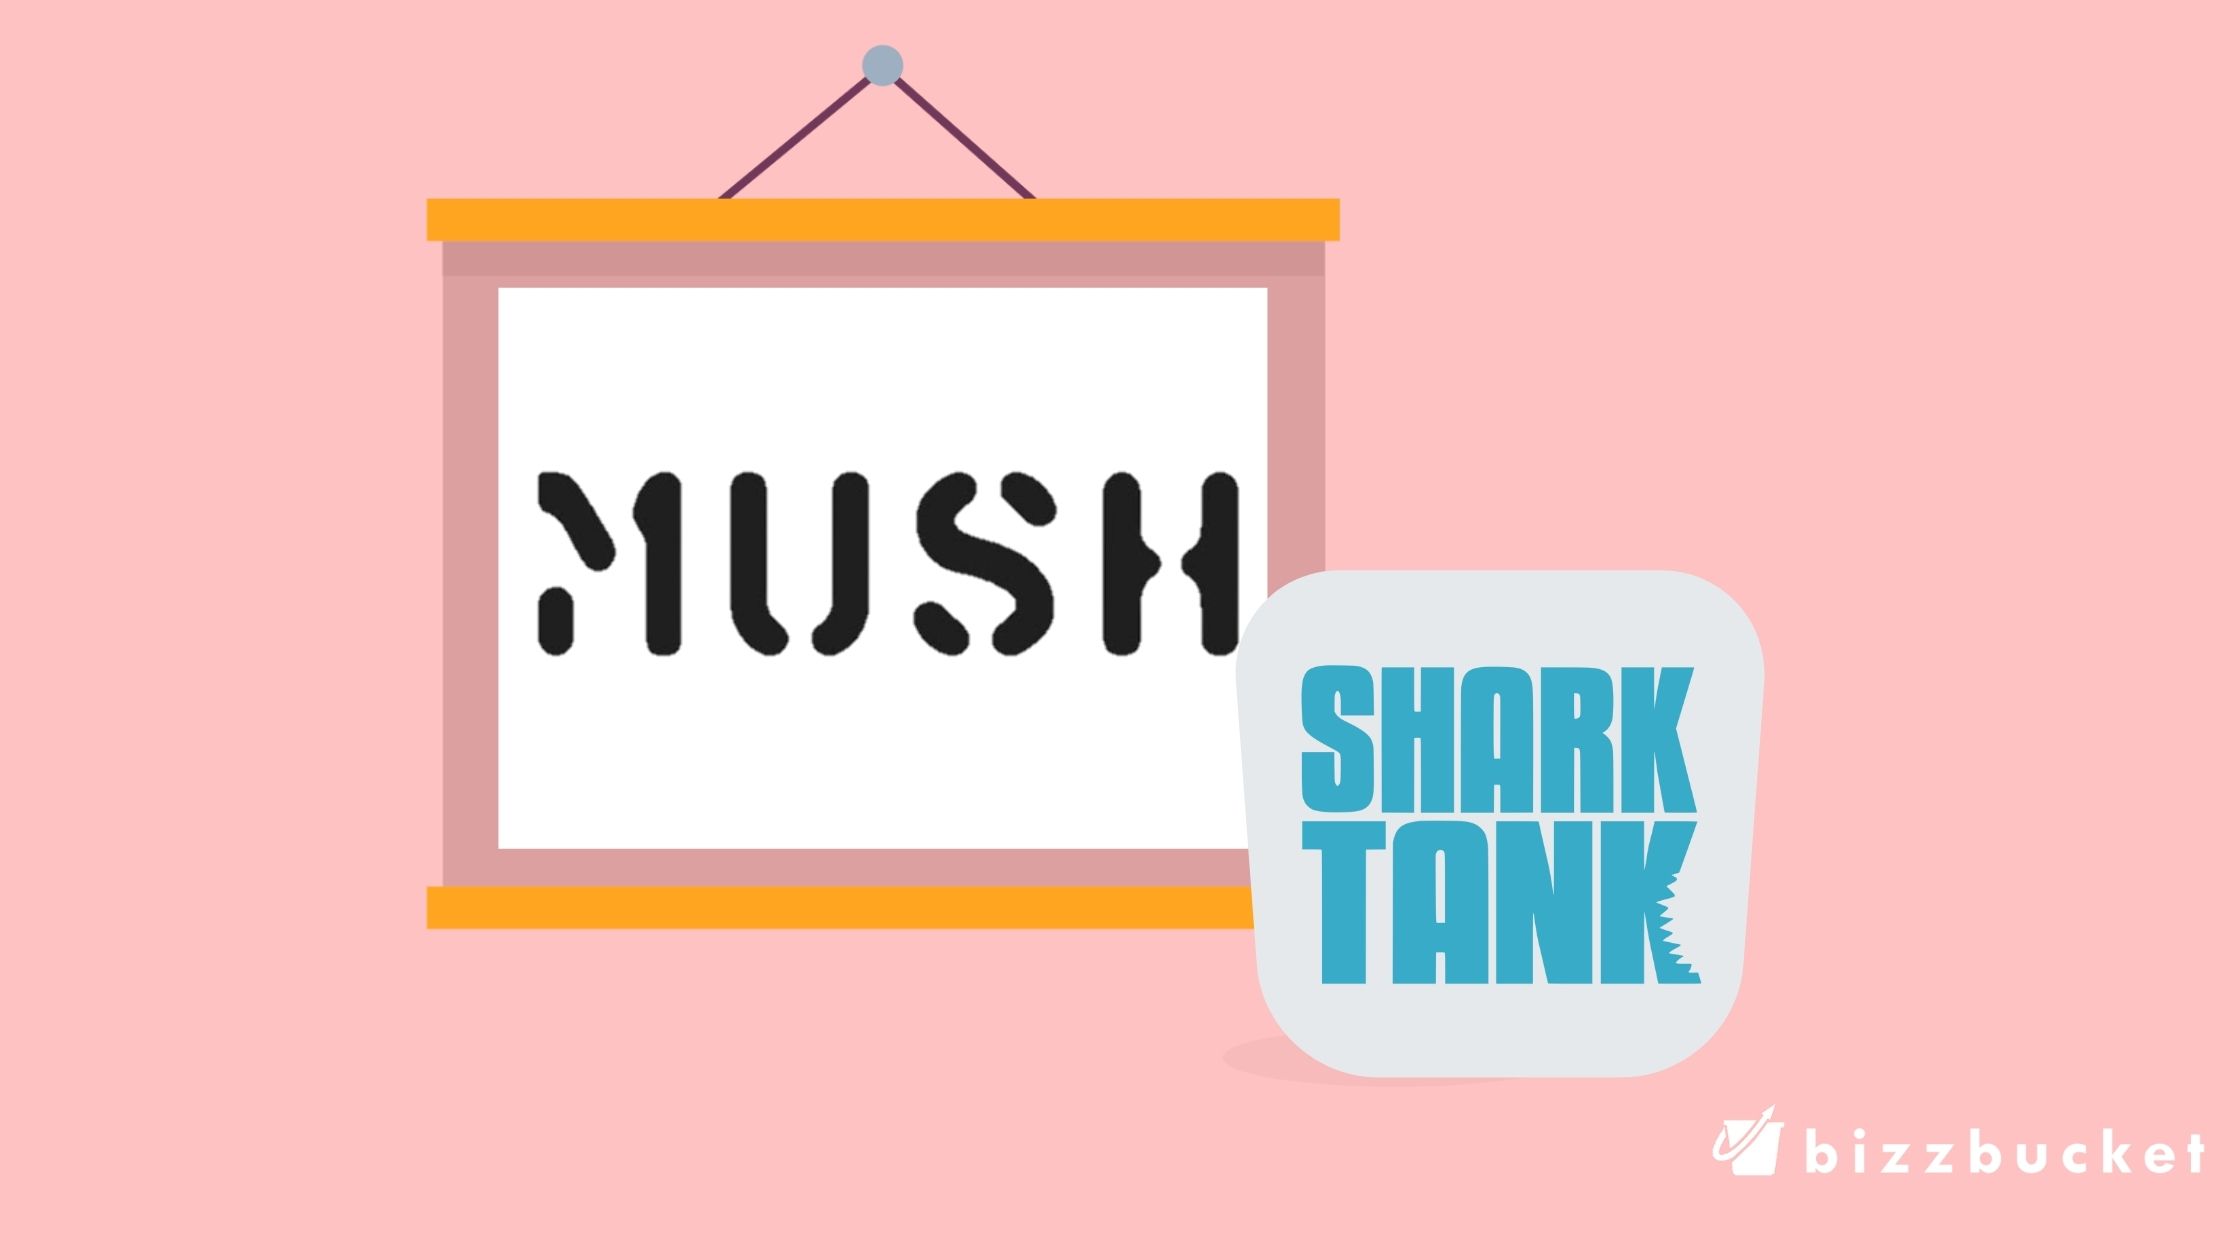 Mush logo